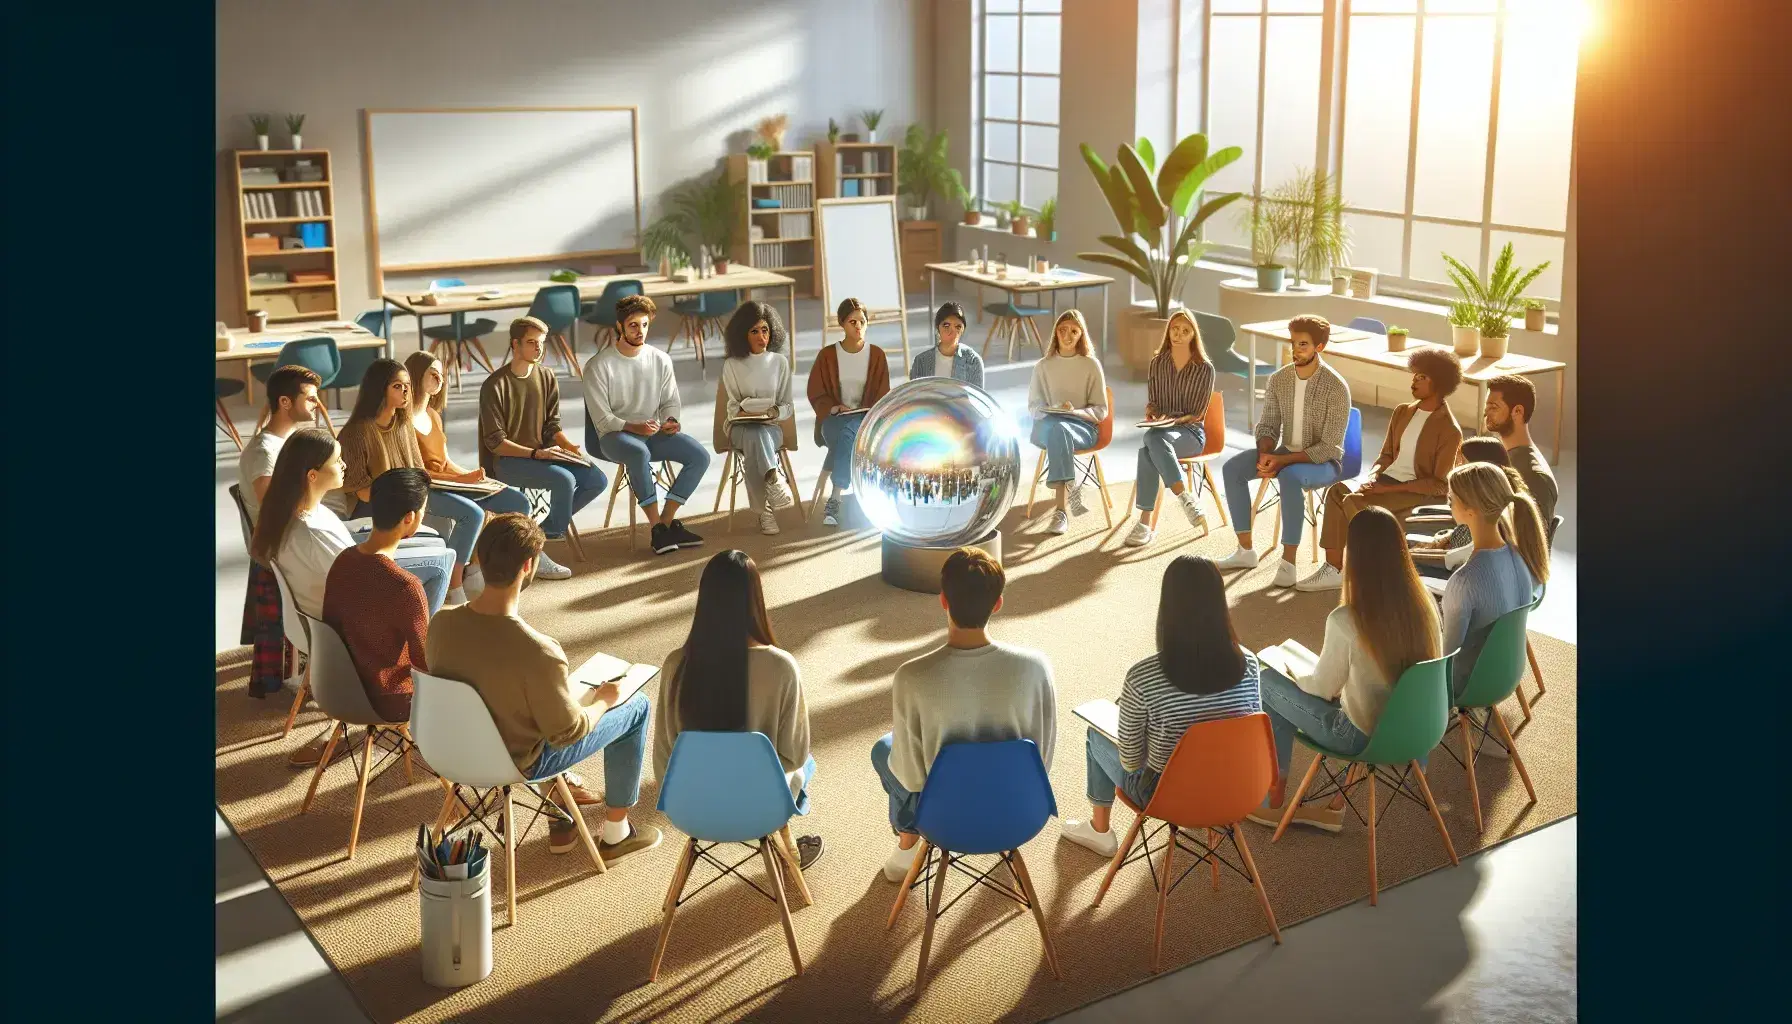 Grupo diverso de estudiantes en círculo en aula iluminada con esfera de vidrio en el centro, reflejando luz y colores, en ambiente de aprendizaje colaborativo.